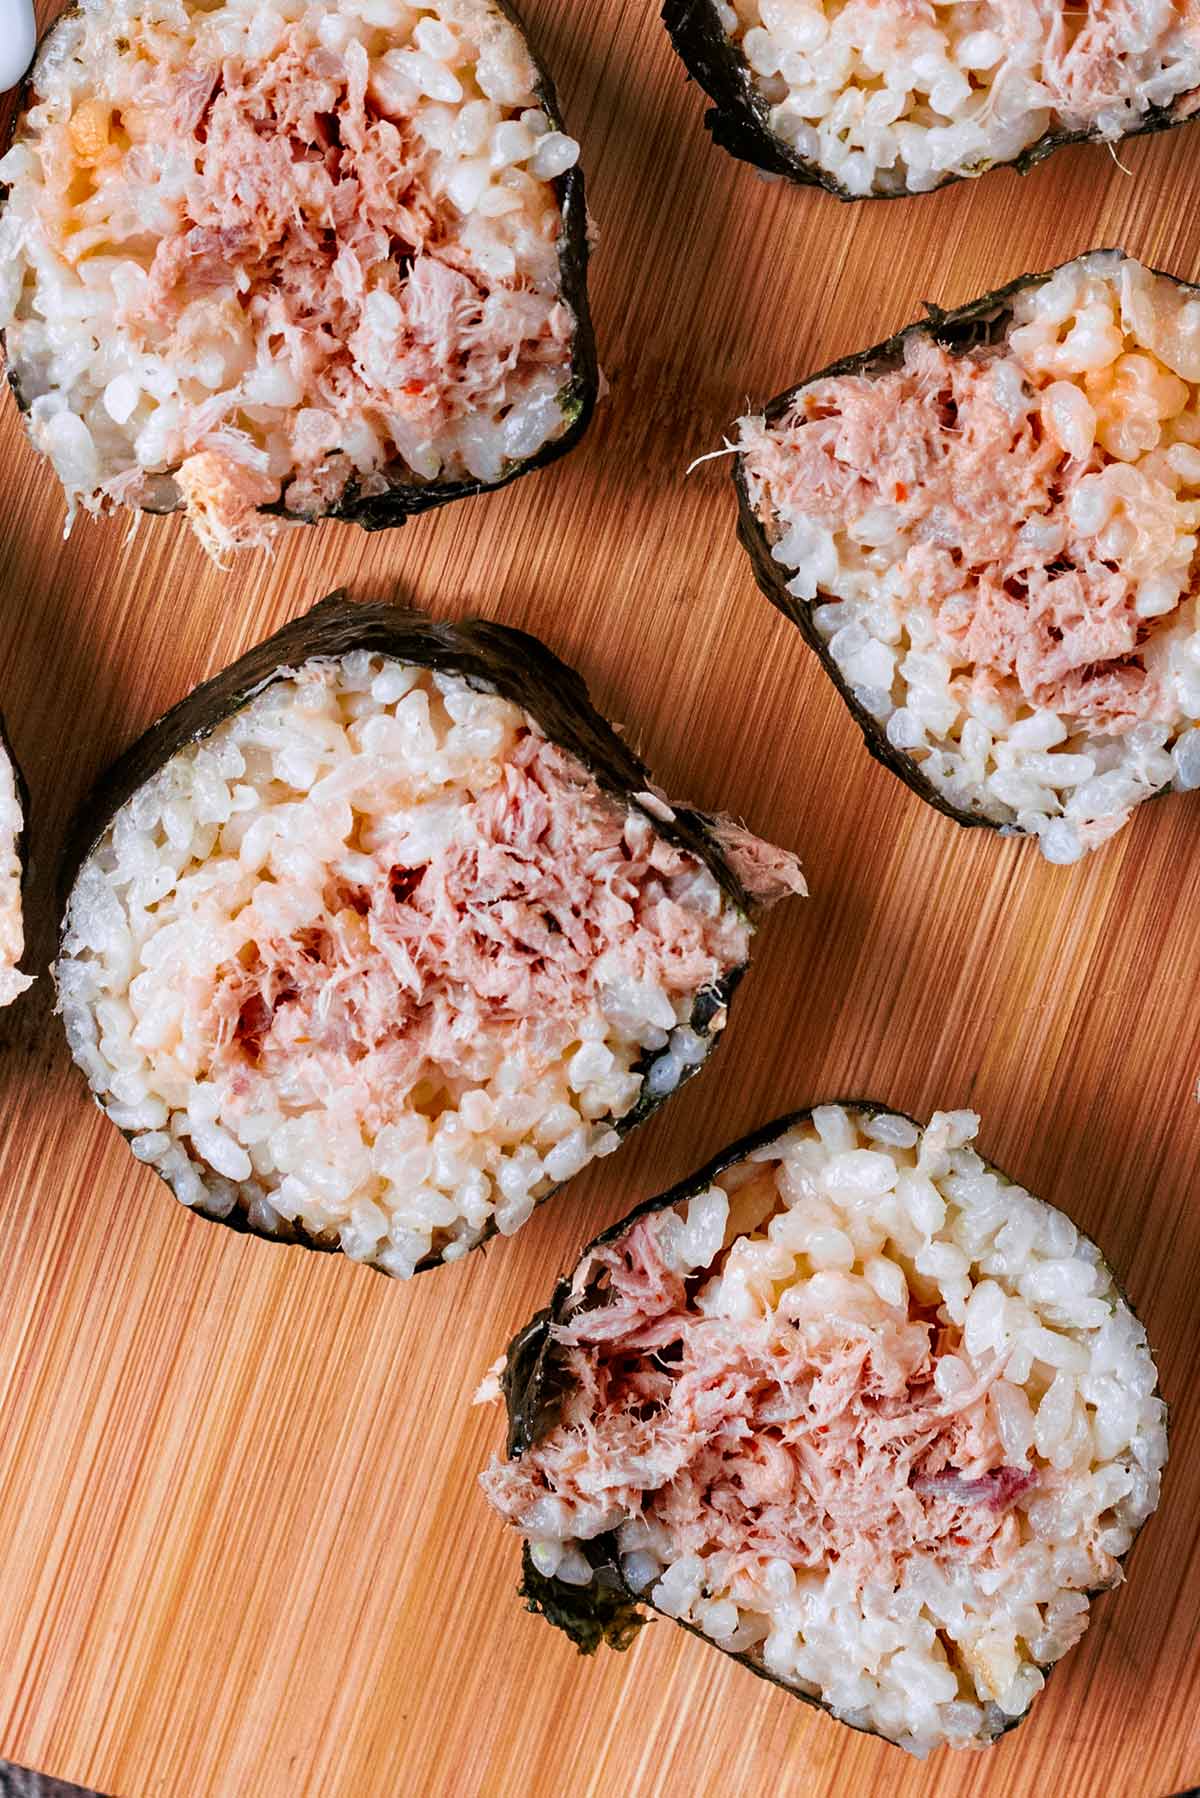 Spicy tuna in a maki sushi roll.